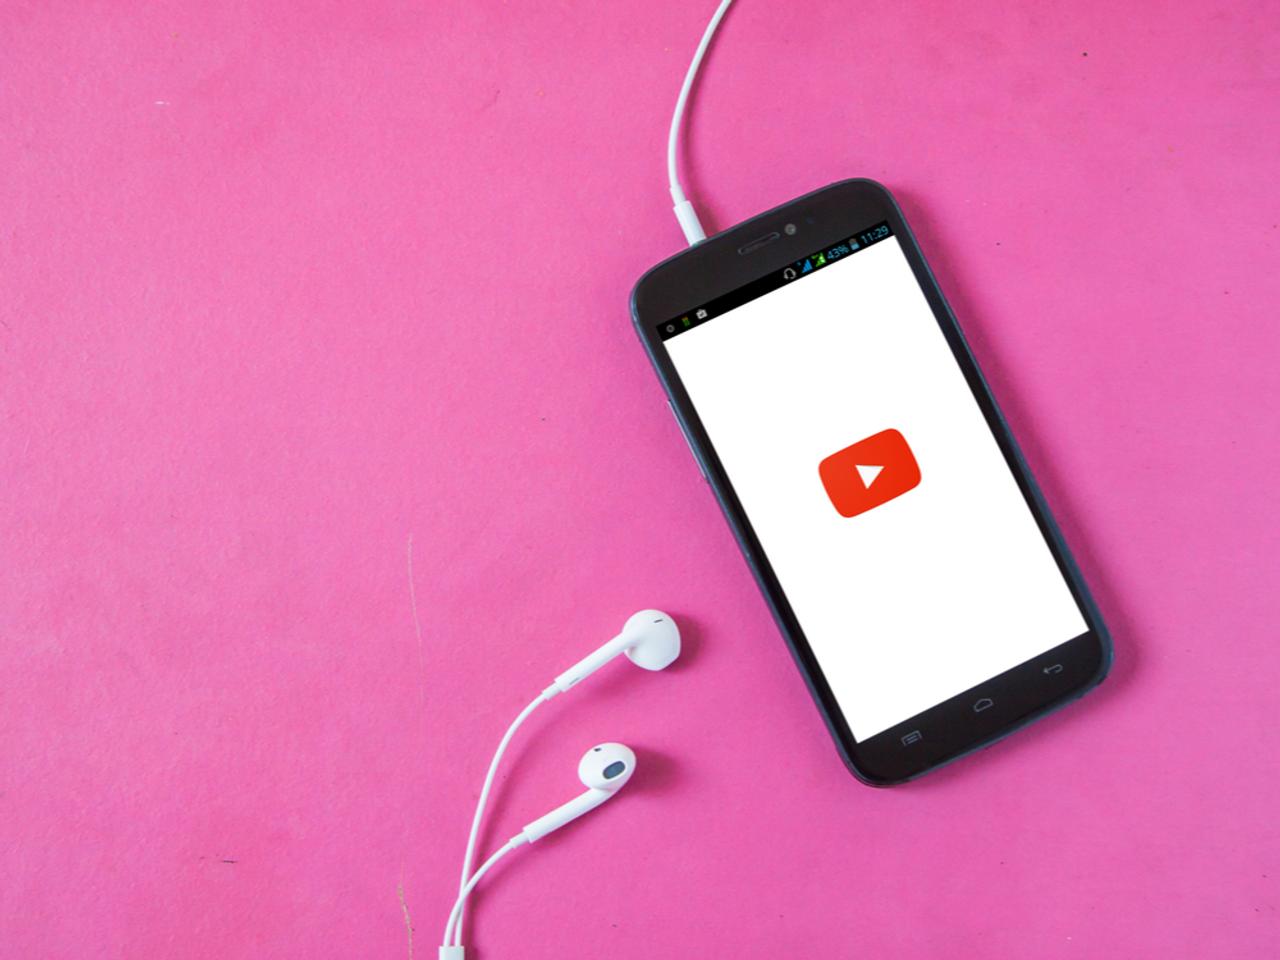 YouTubeがサブスク型音楽配信サービスを始めるかも。Google Play Musicは...？